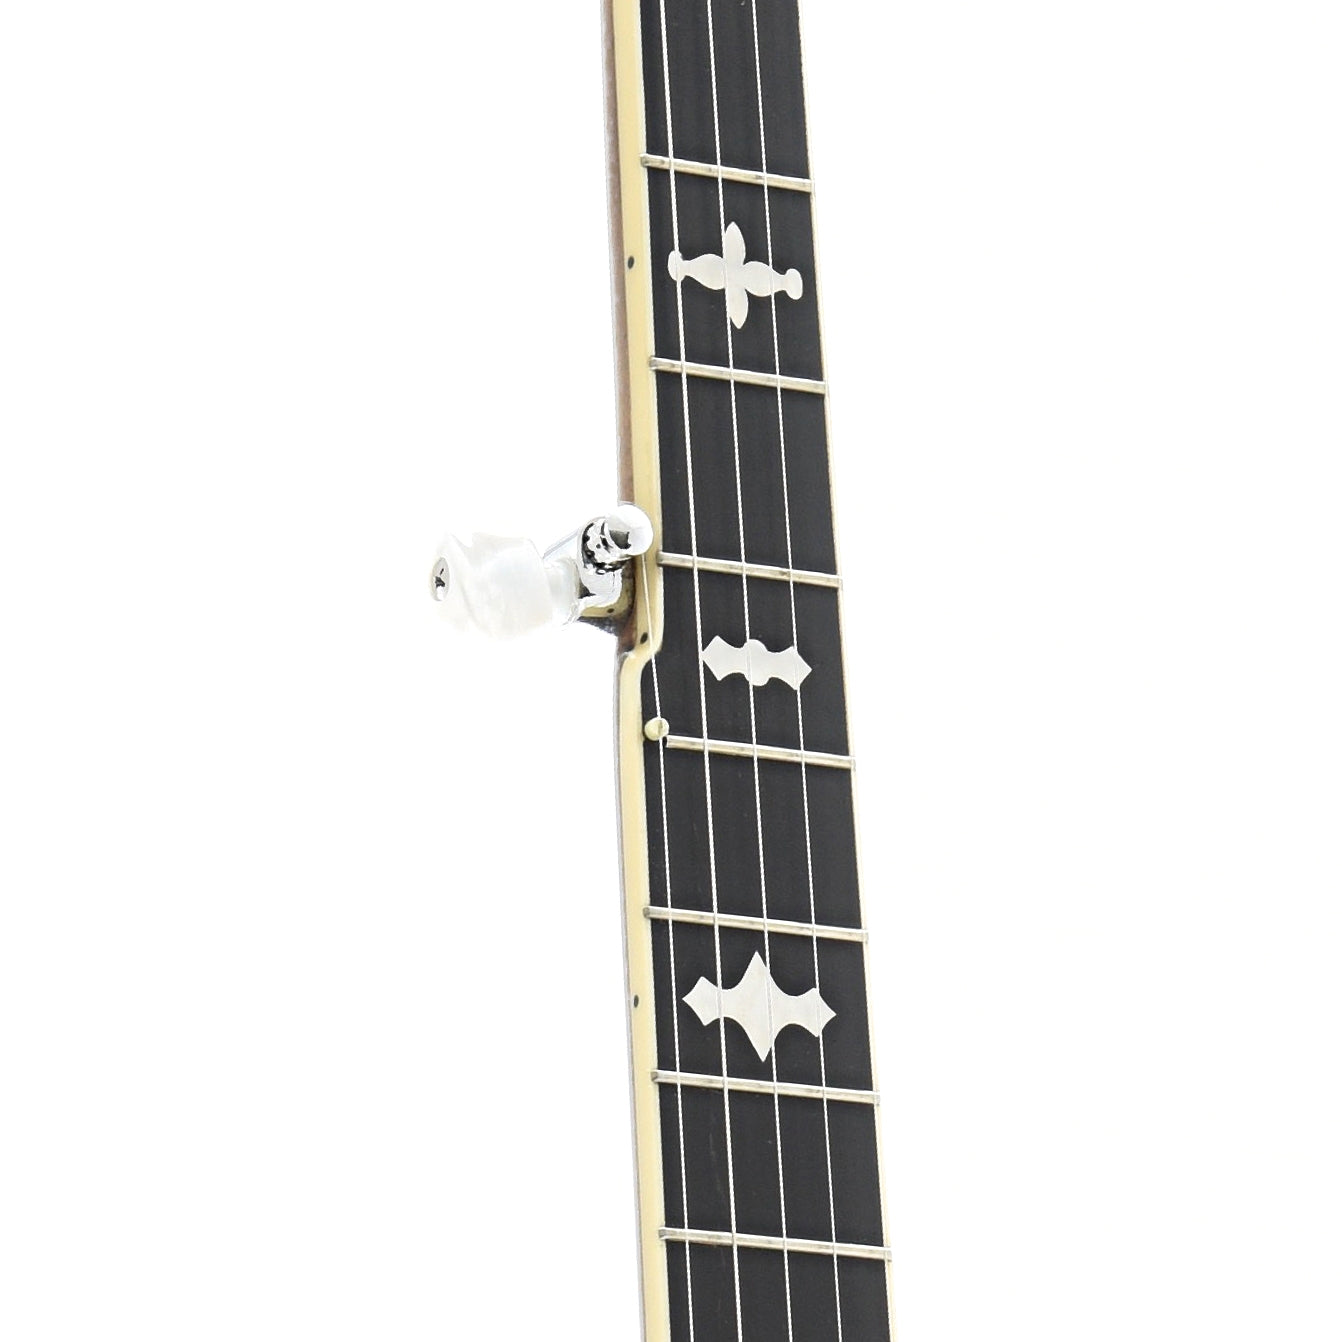 Image 6 of Gold Tone OB-150 Orange Blossom Banjo & Case - SKU# GTOB150 : Product Type Resonator Back Banjos : Elderly Instruments